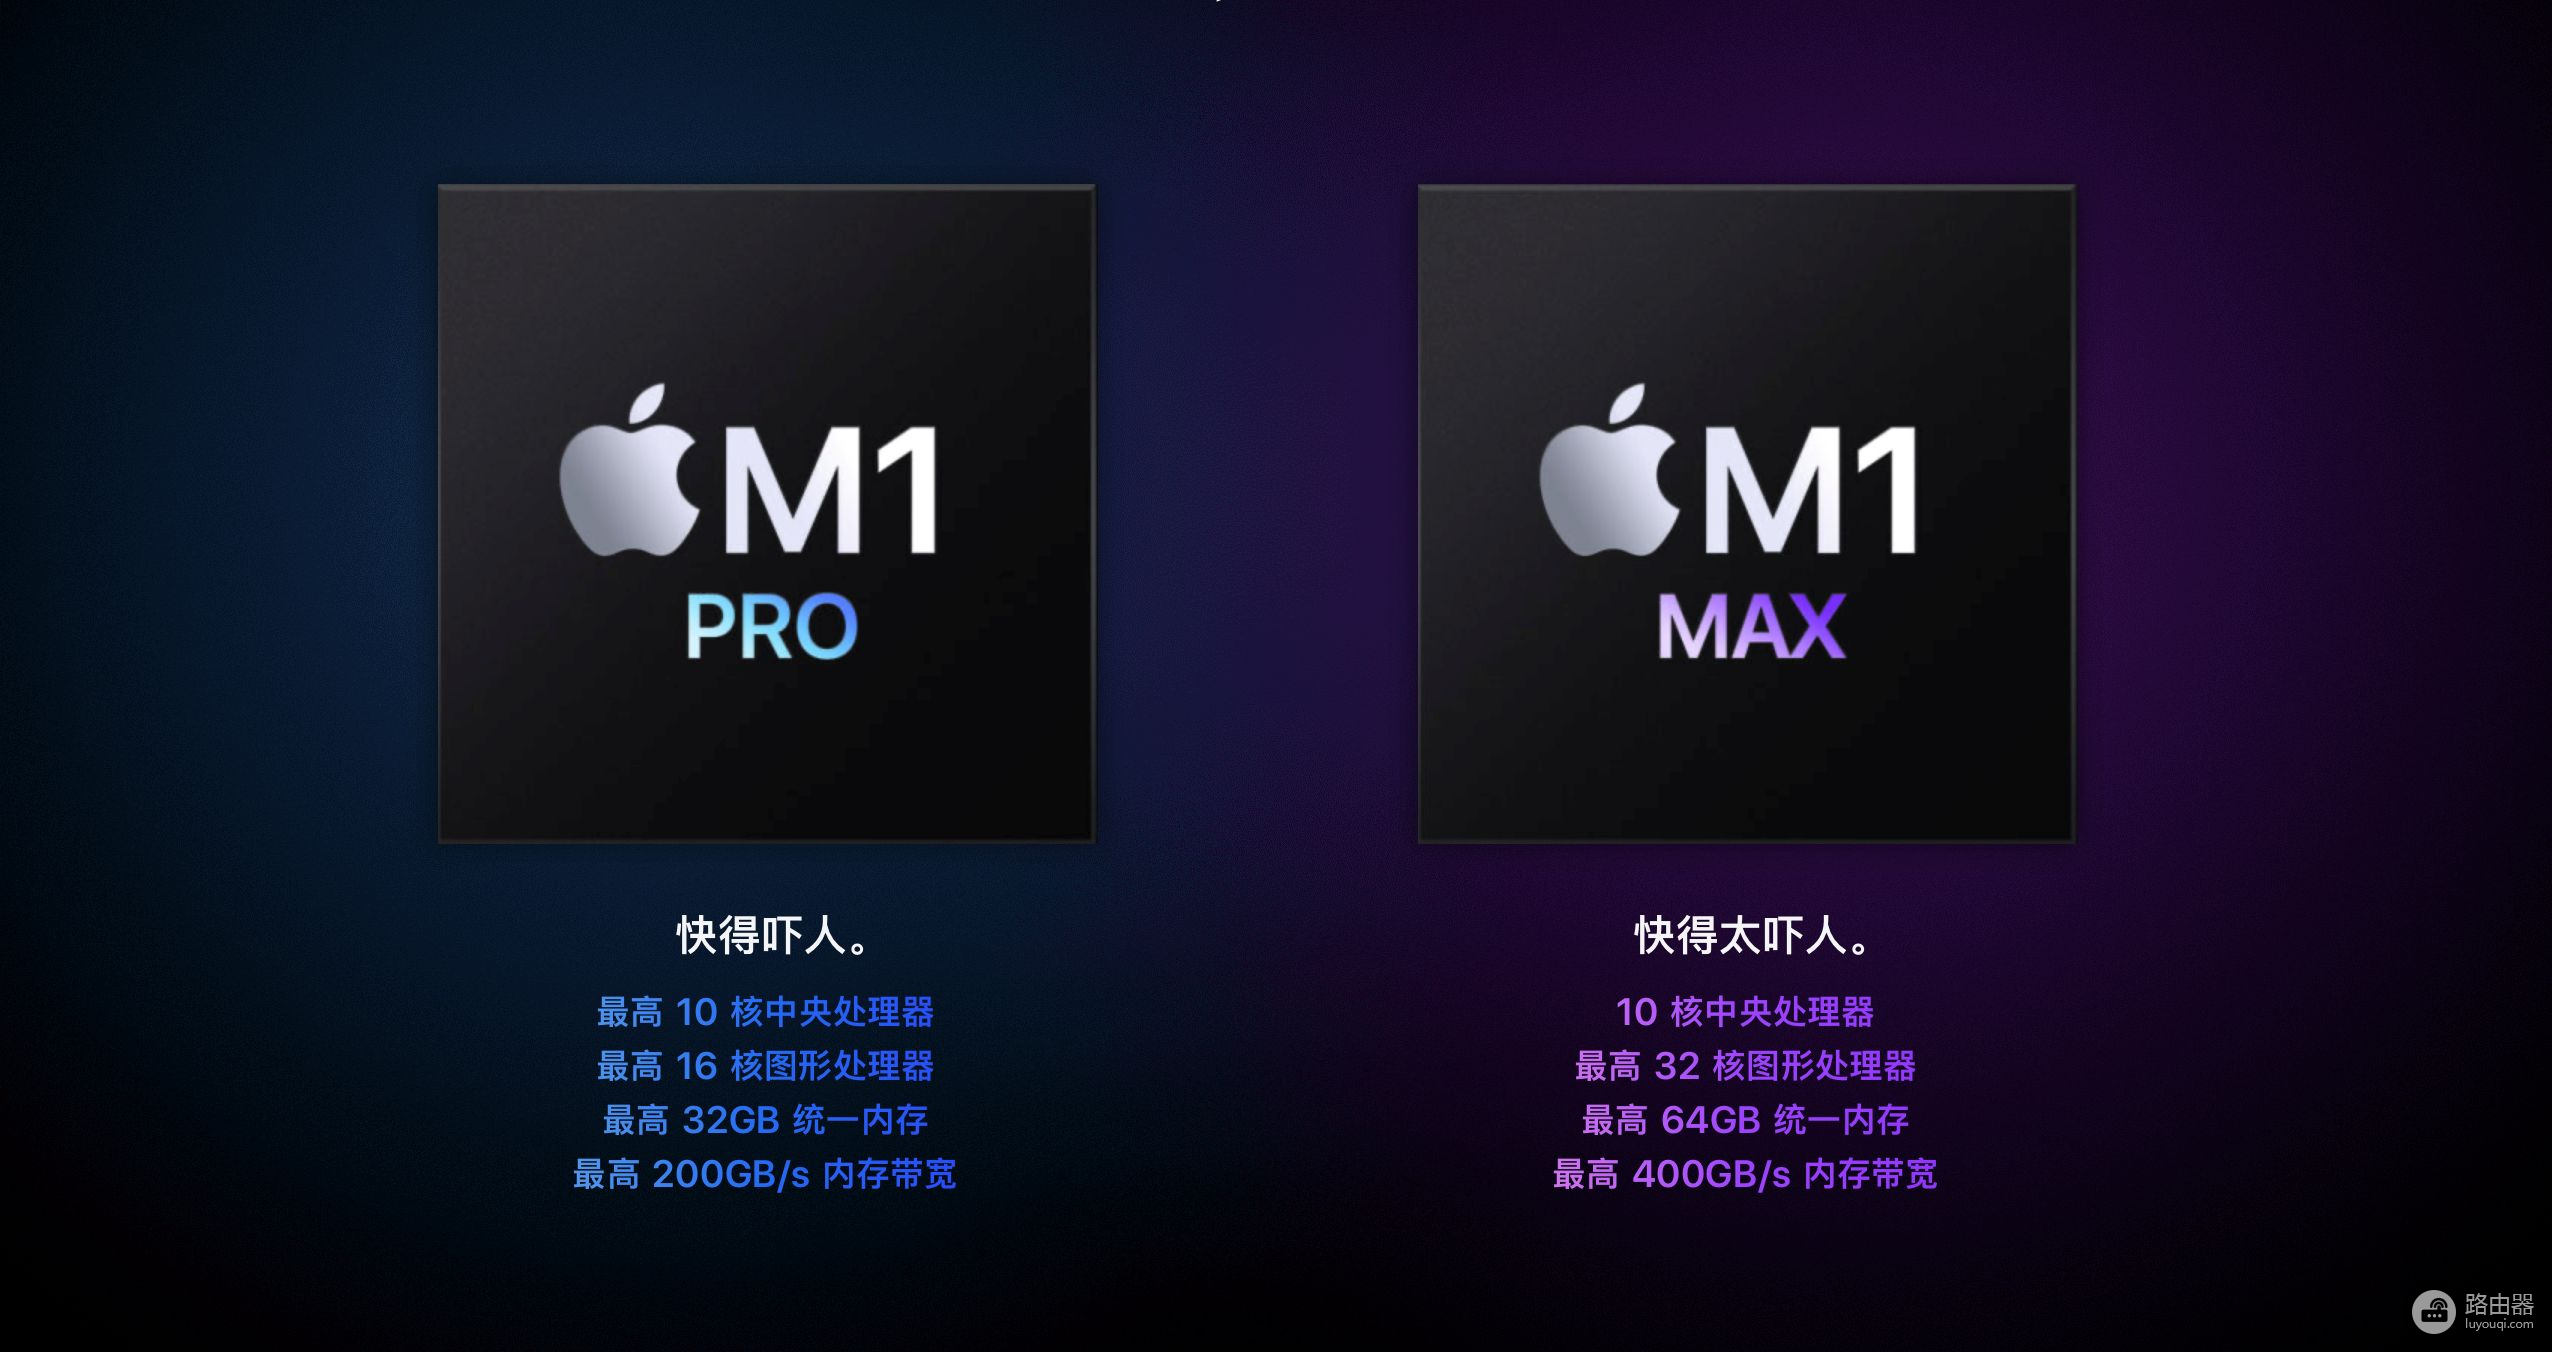 苹果推出两款Pro笔记本电脑(苹果笔记本电脑pro系列)